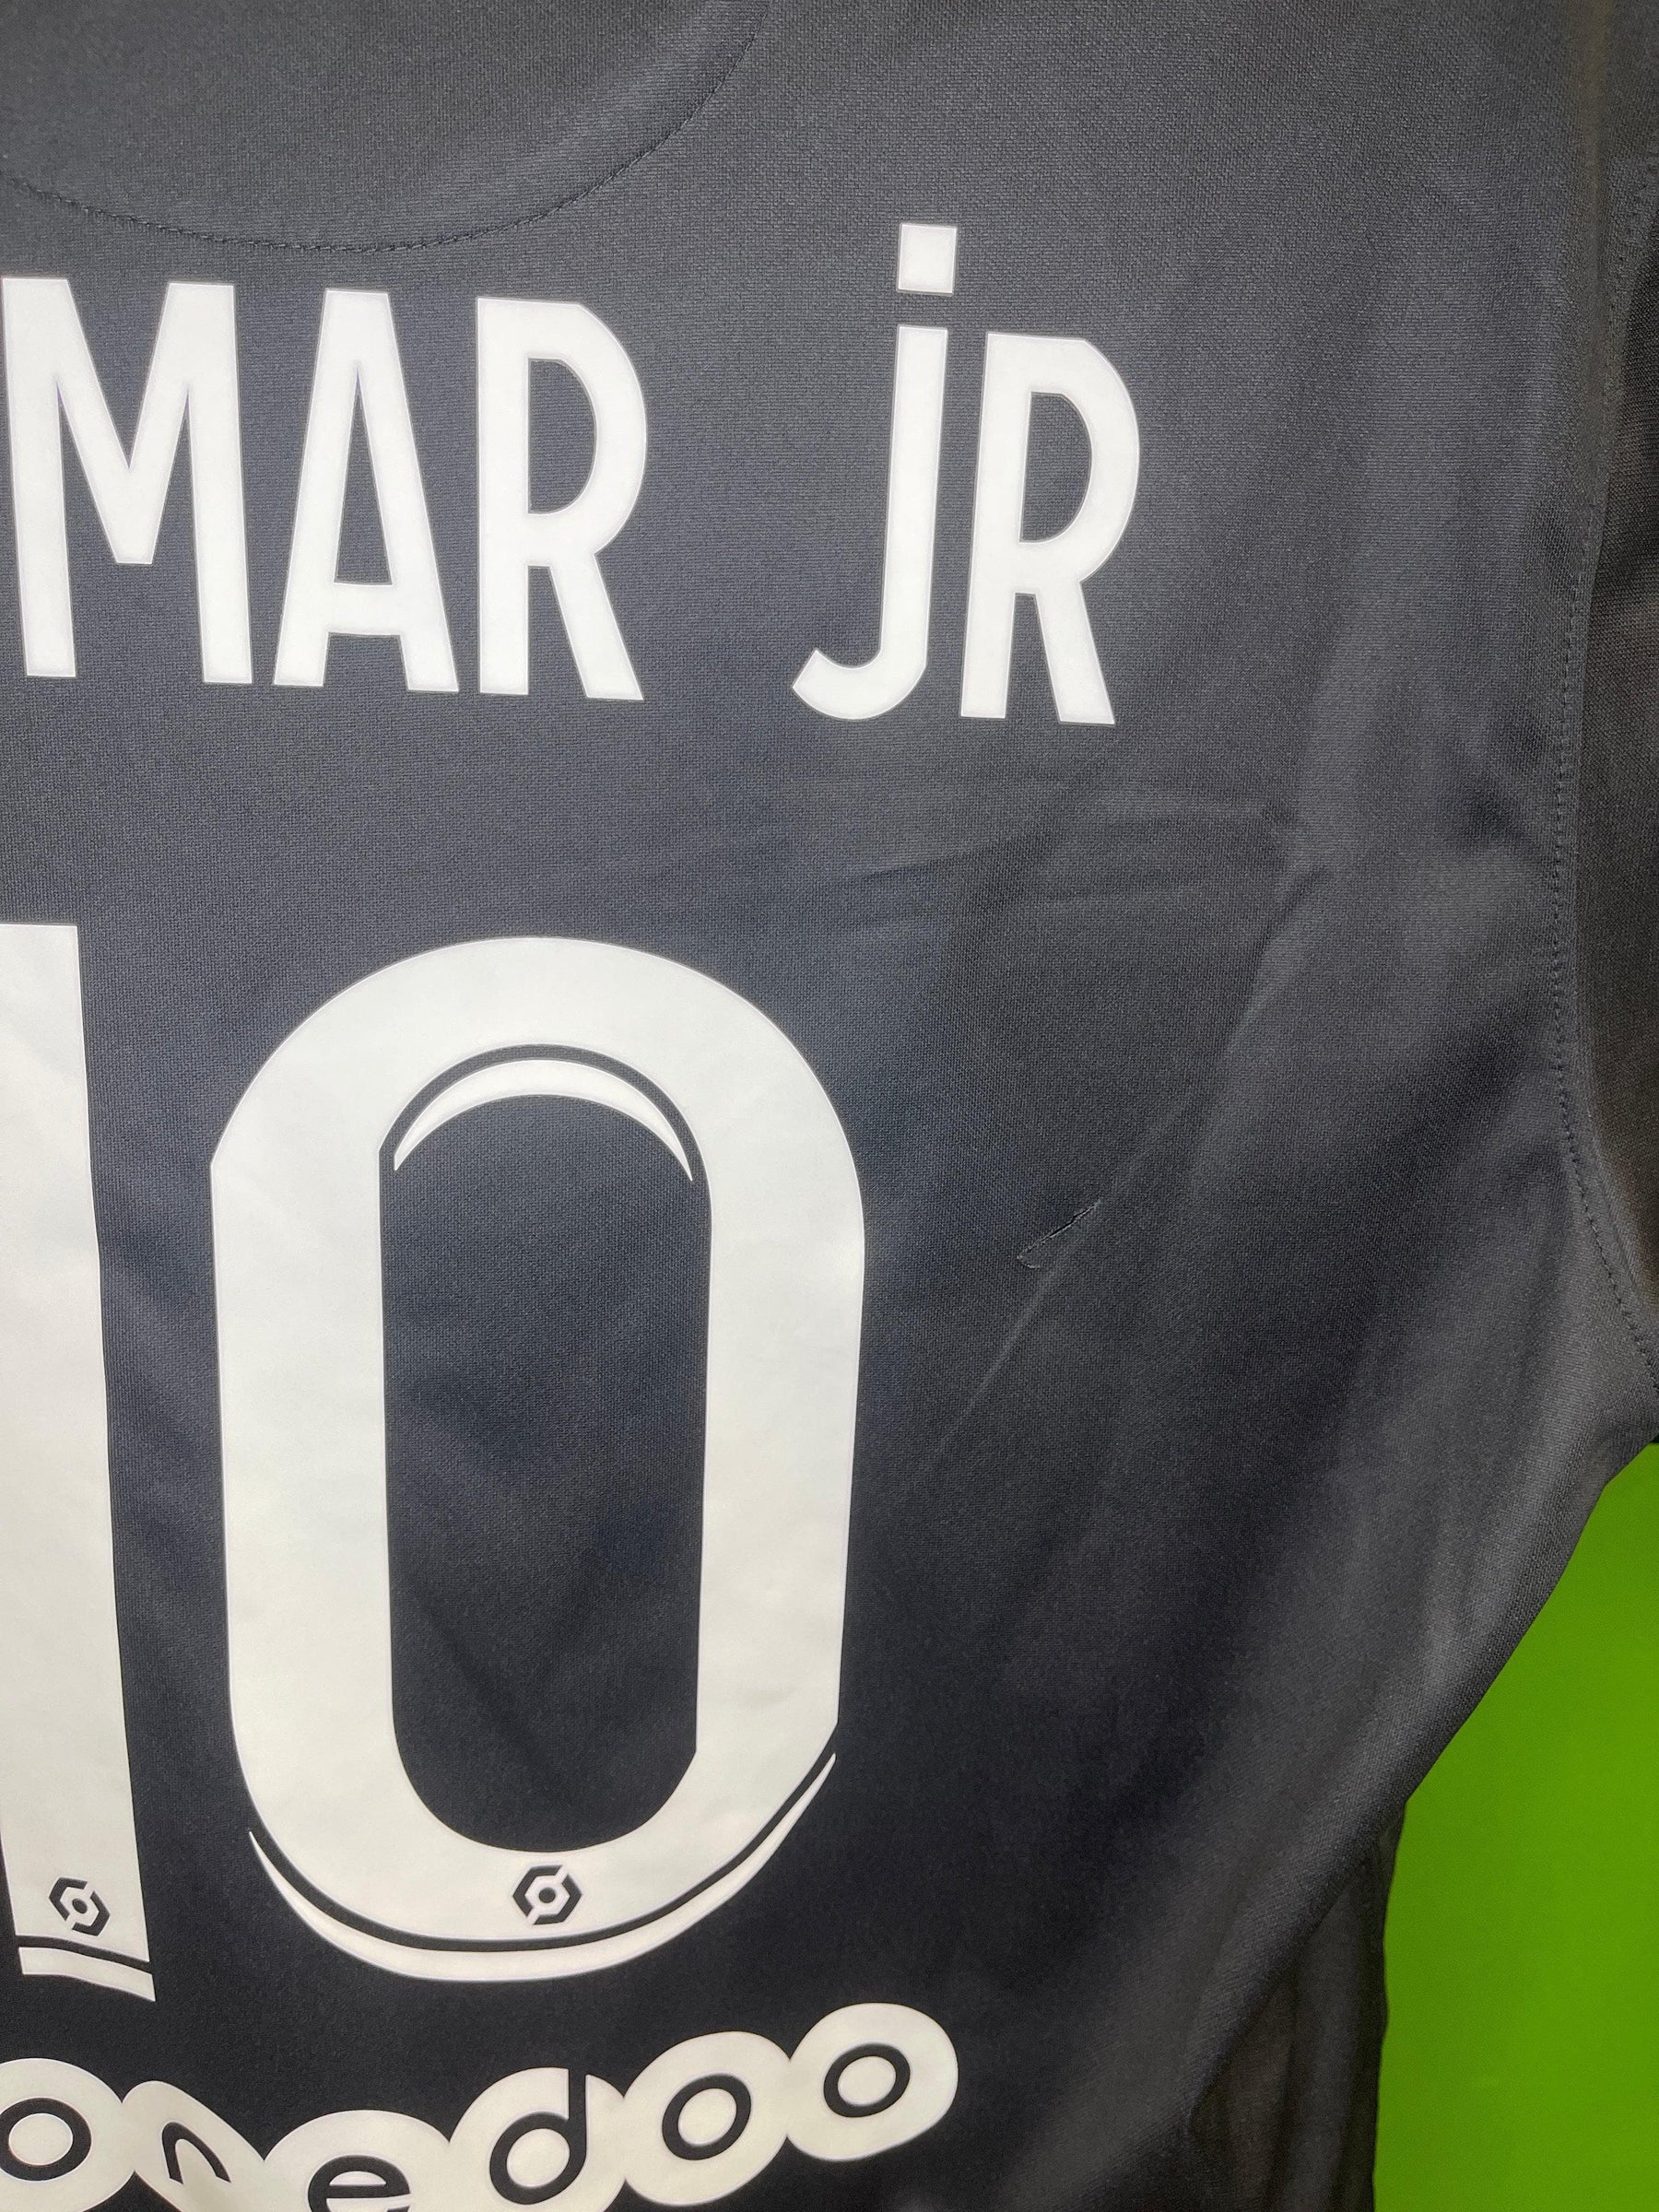 PSG Paris Saint-Germain Neymar Jr Third Stadium Shirt 2021-22 Men's X-Large NWT